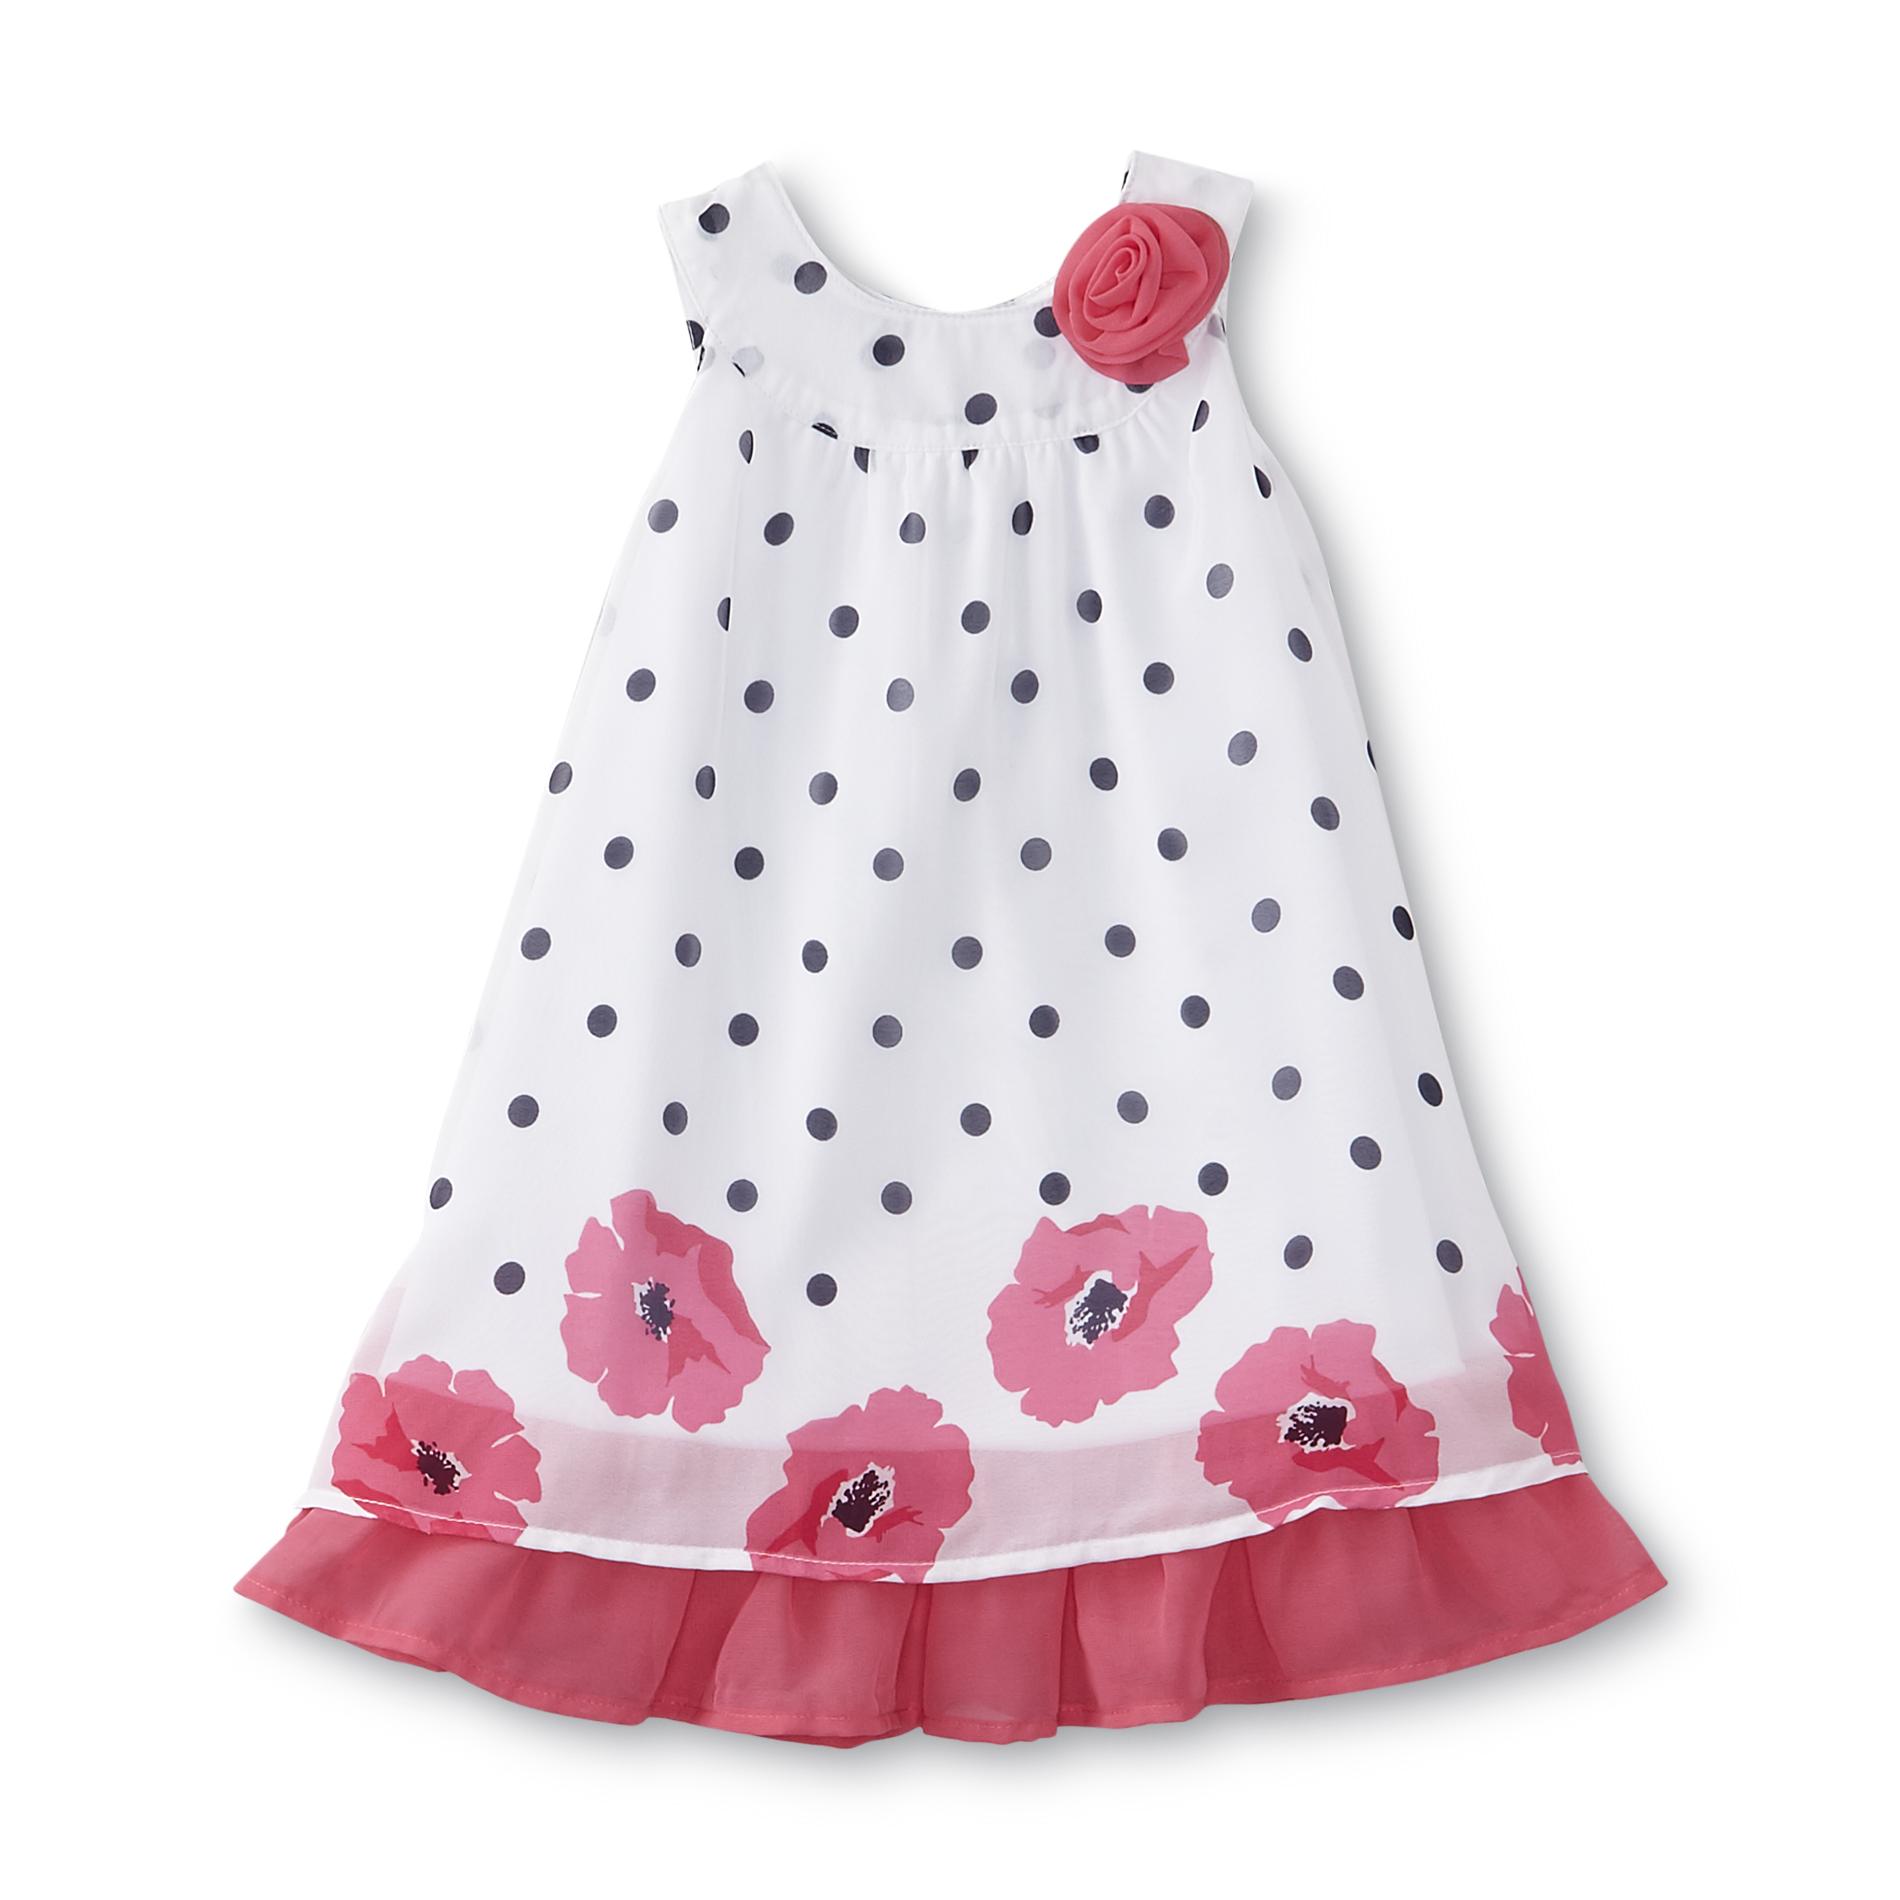 Blueberi Boulevard Infant & Toddler Girl's Chiffon Sundress - Polka Dot & Floral